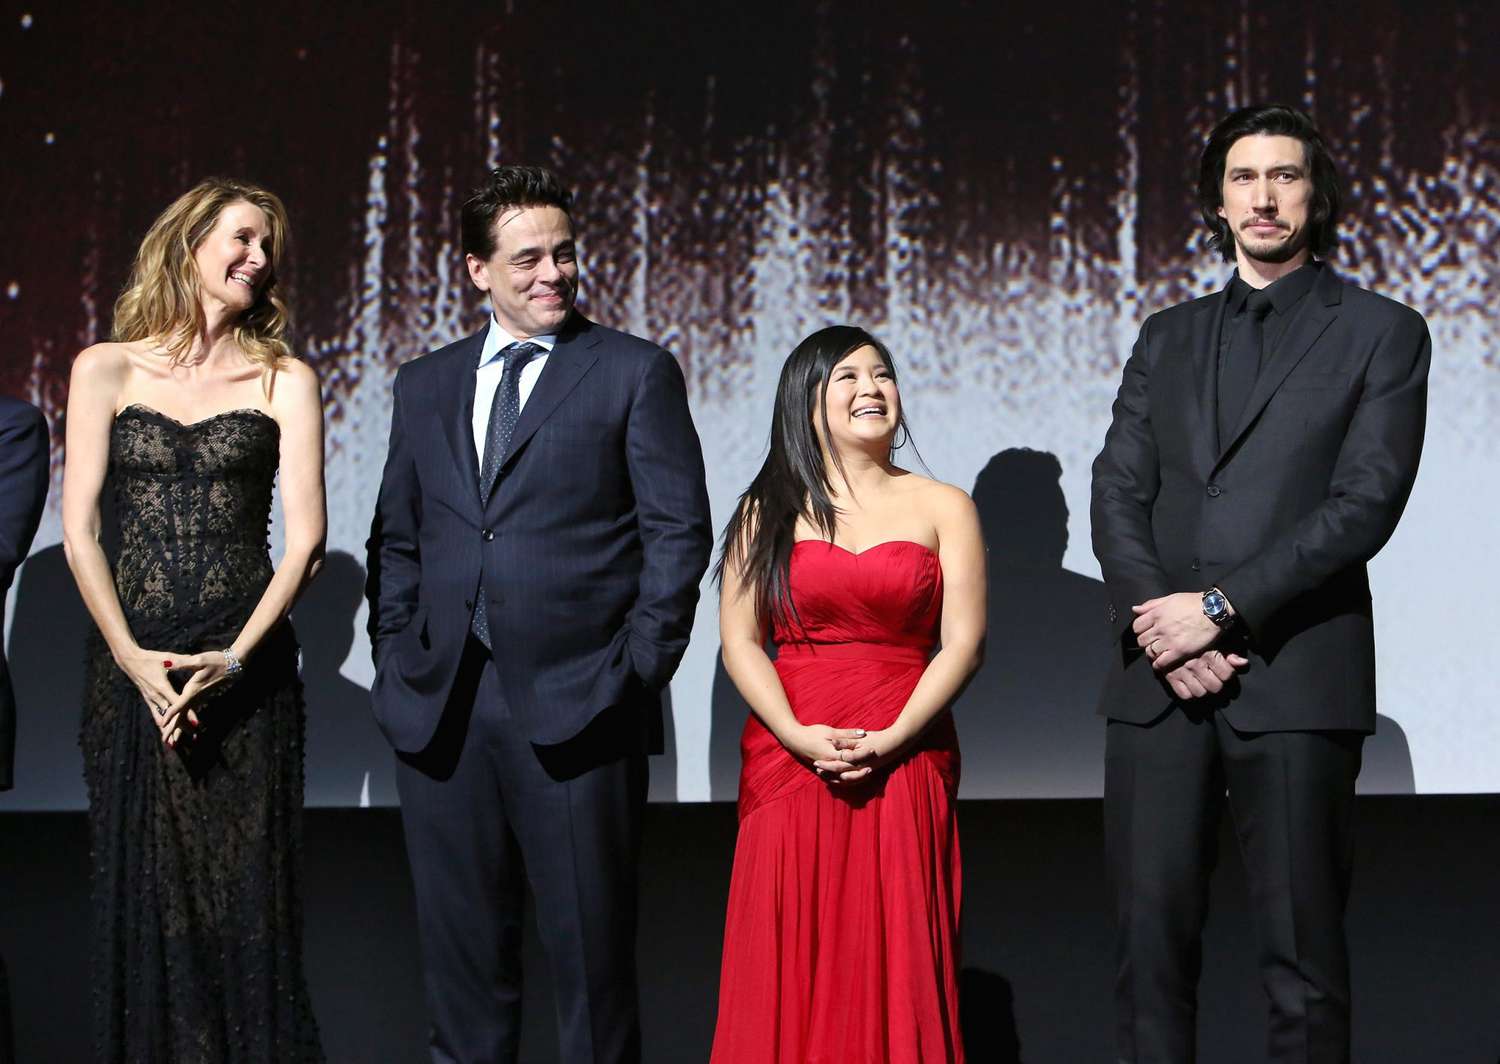 Laura Dern, Benicio del Toro, Kelly Marie Tran and Adam Driver